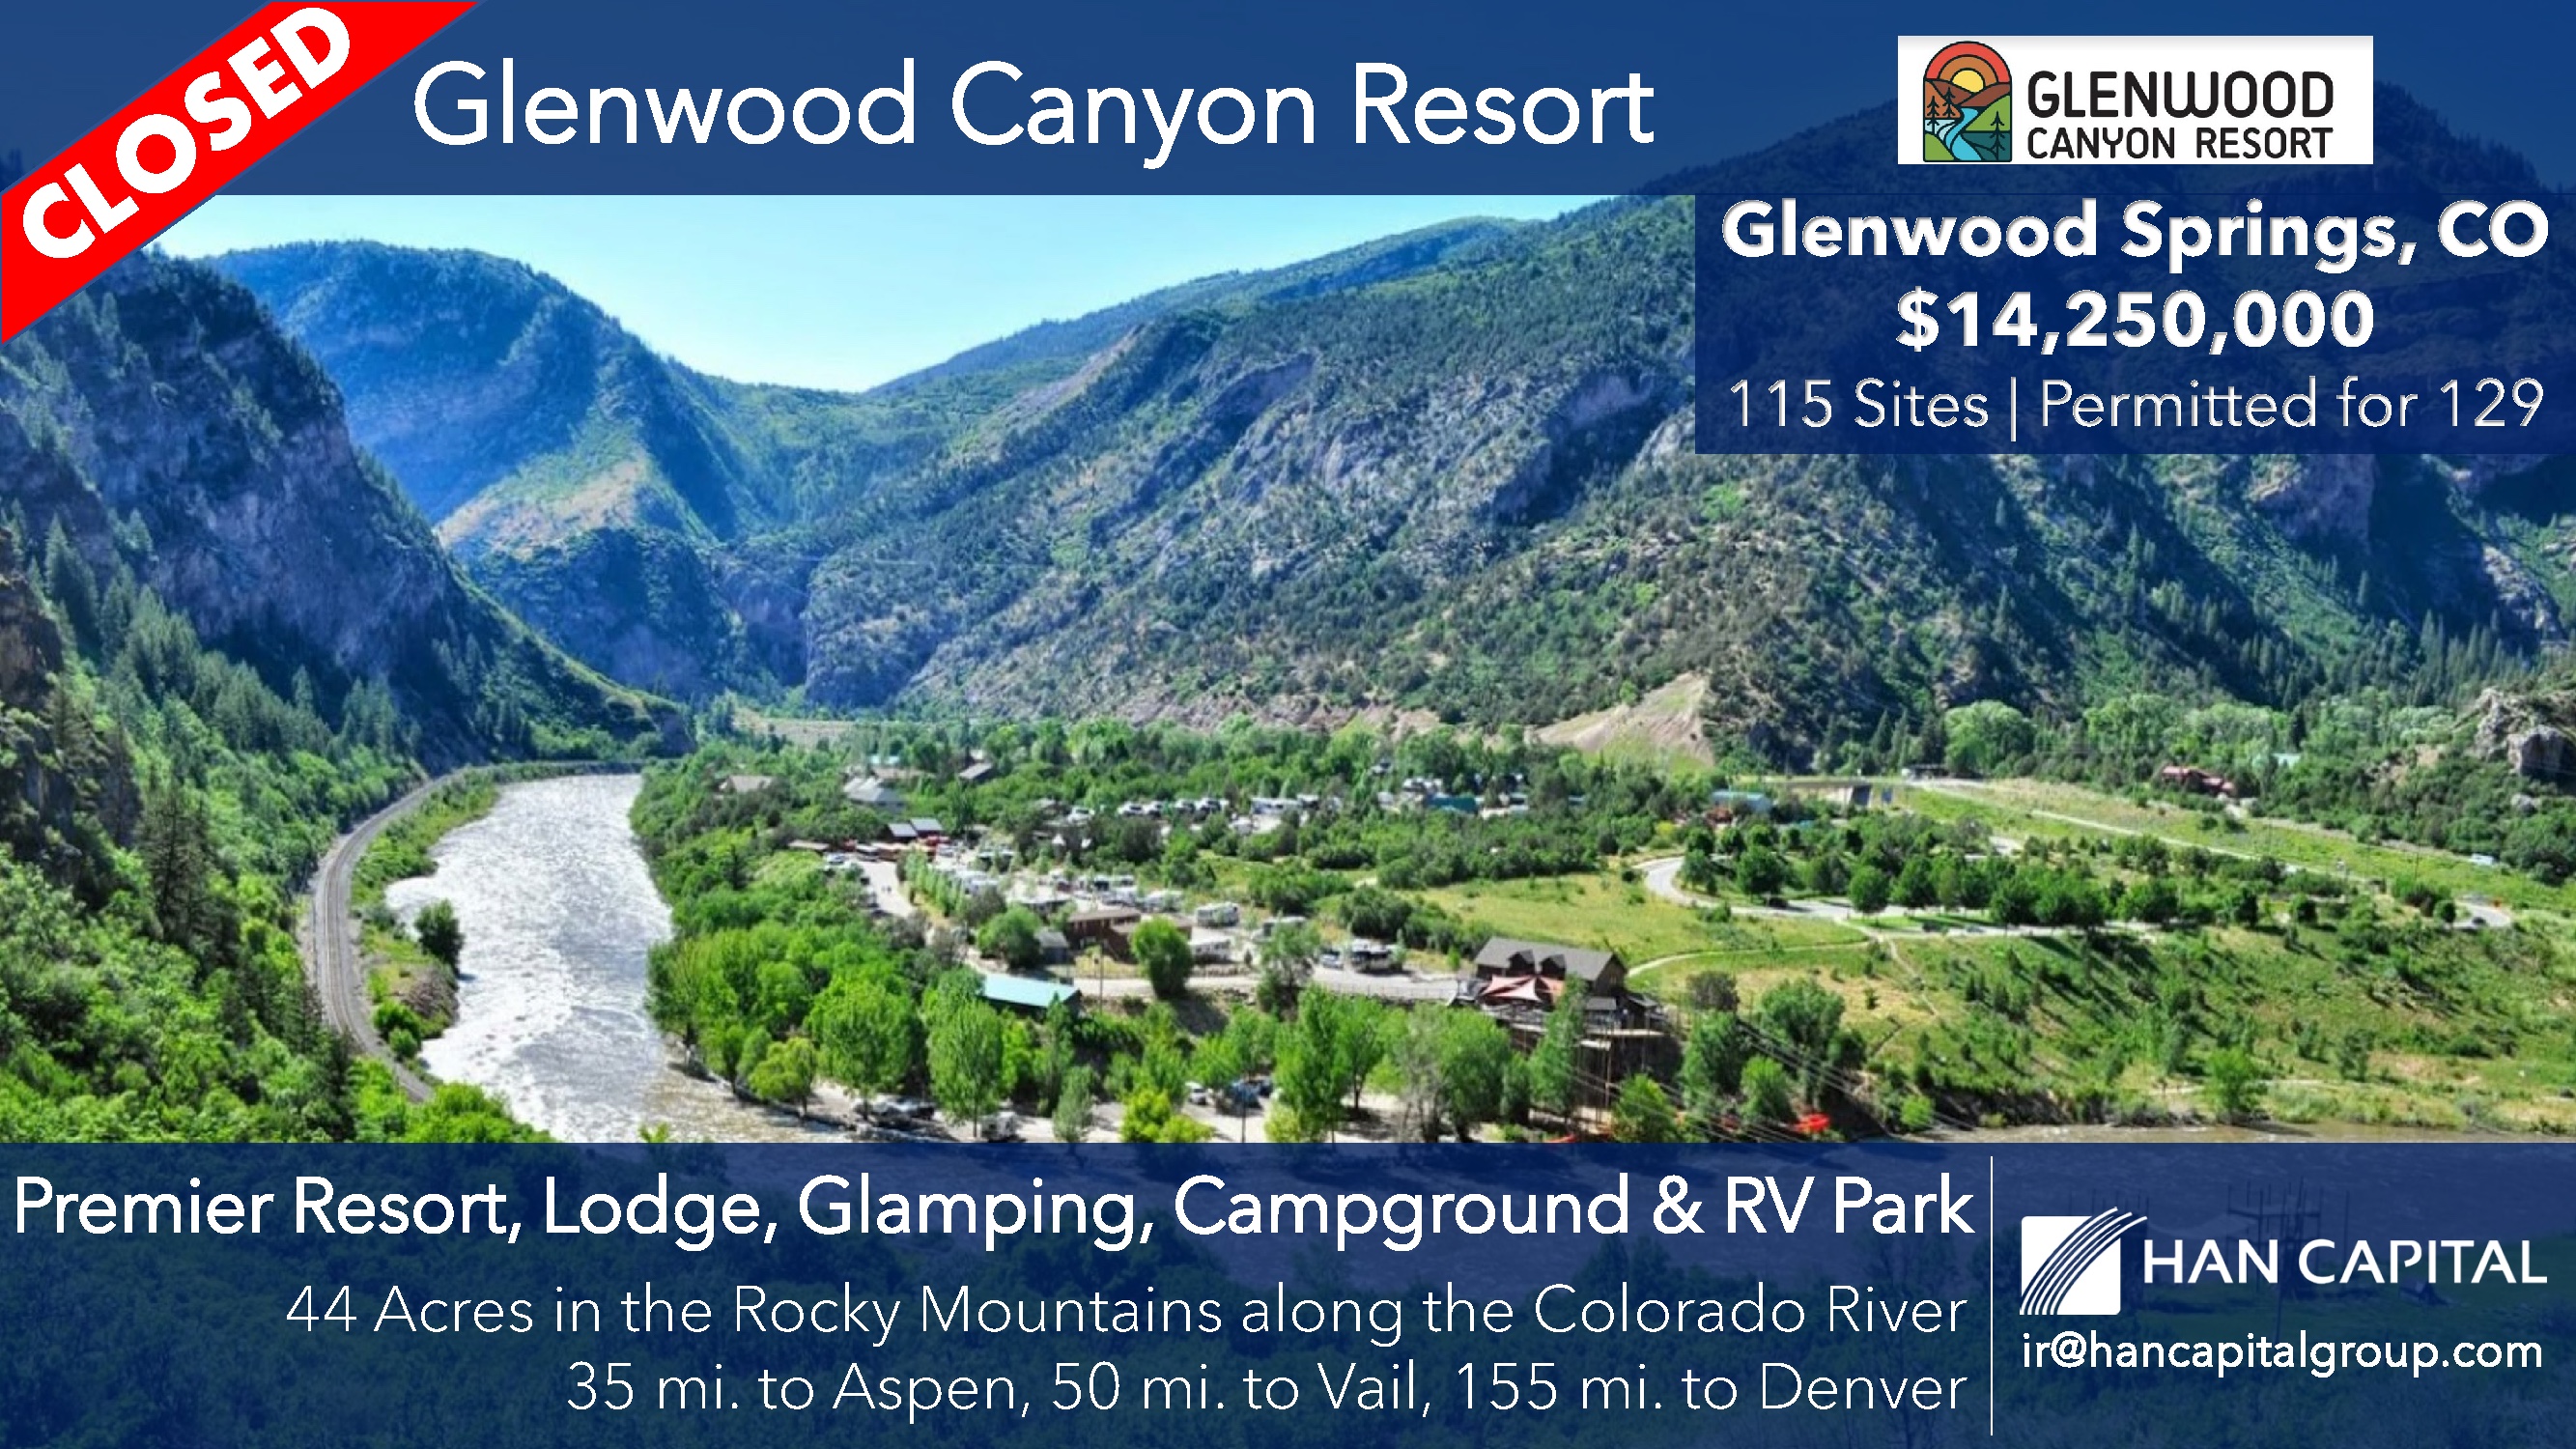 Glenwood Canyon Resort Acquisition